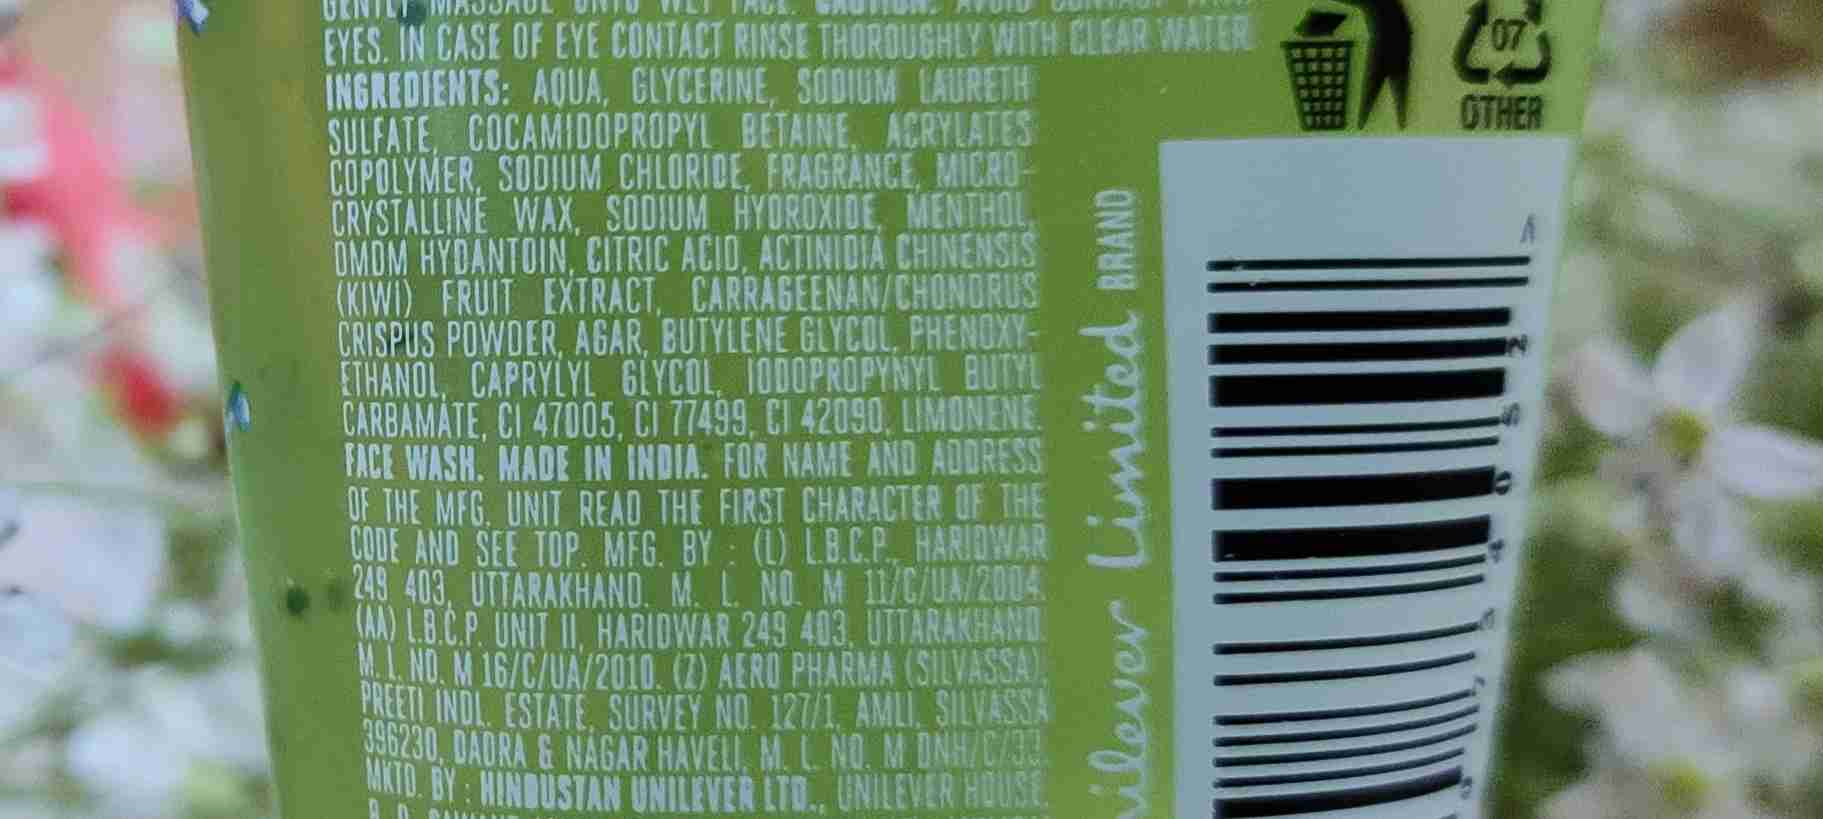 Lakme Kiwi Gel Face Wash Ingredients